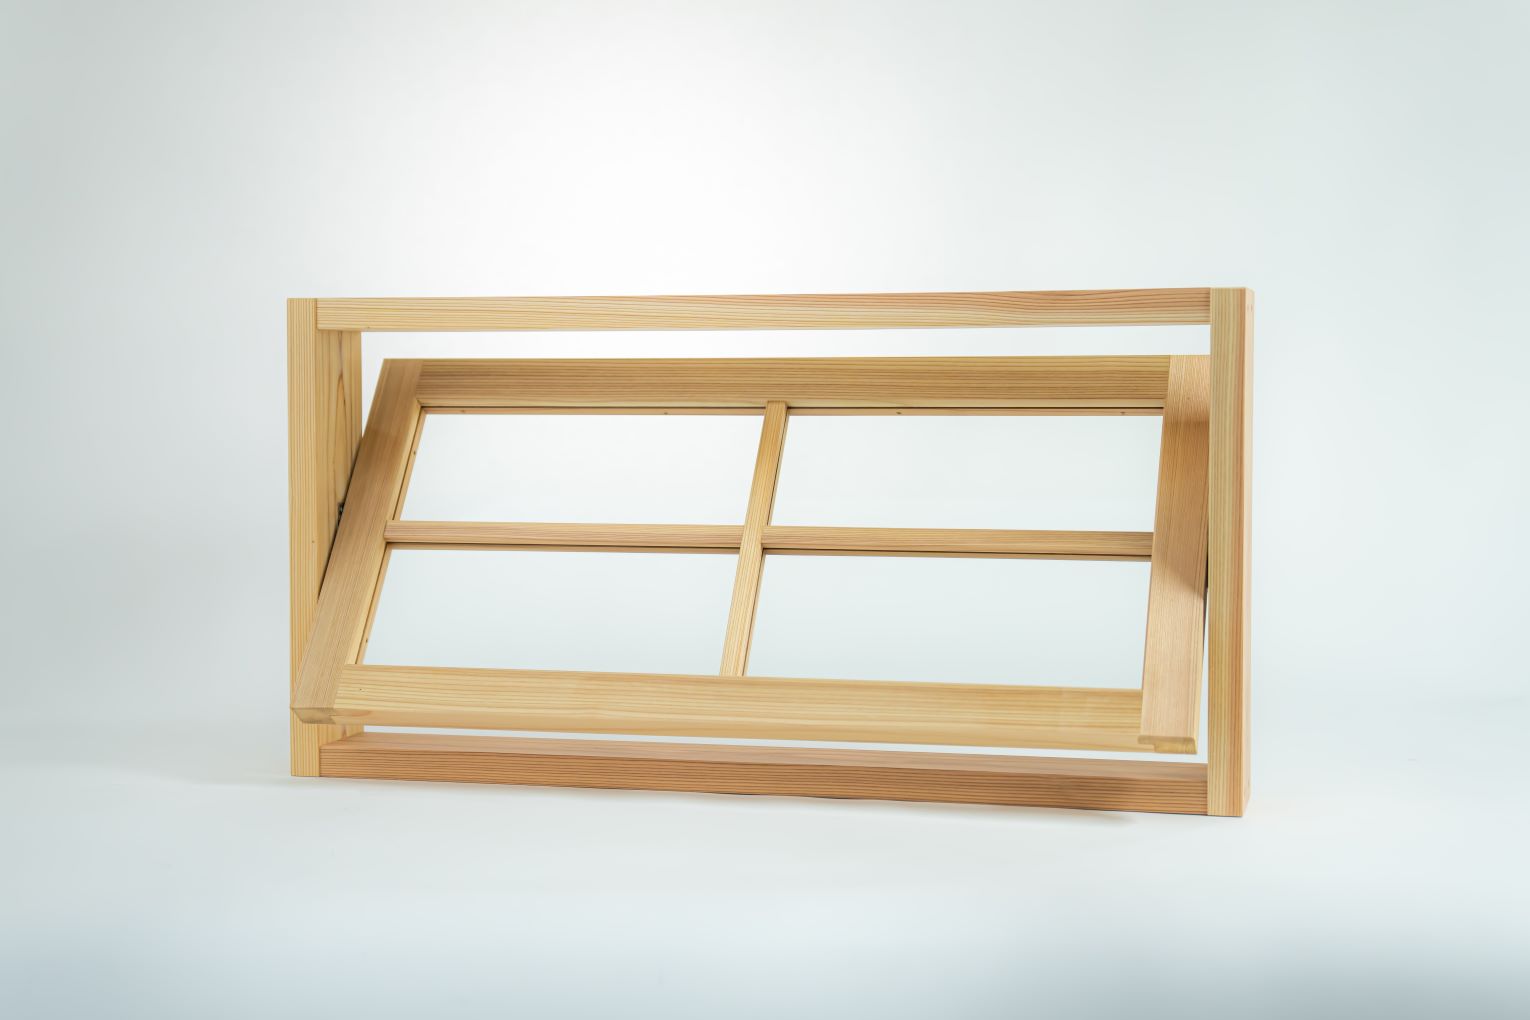 木製室内窓 マドリノ 横軸回転窓(長方形) 770×392mm|※格子はオプションです